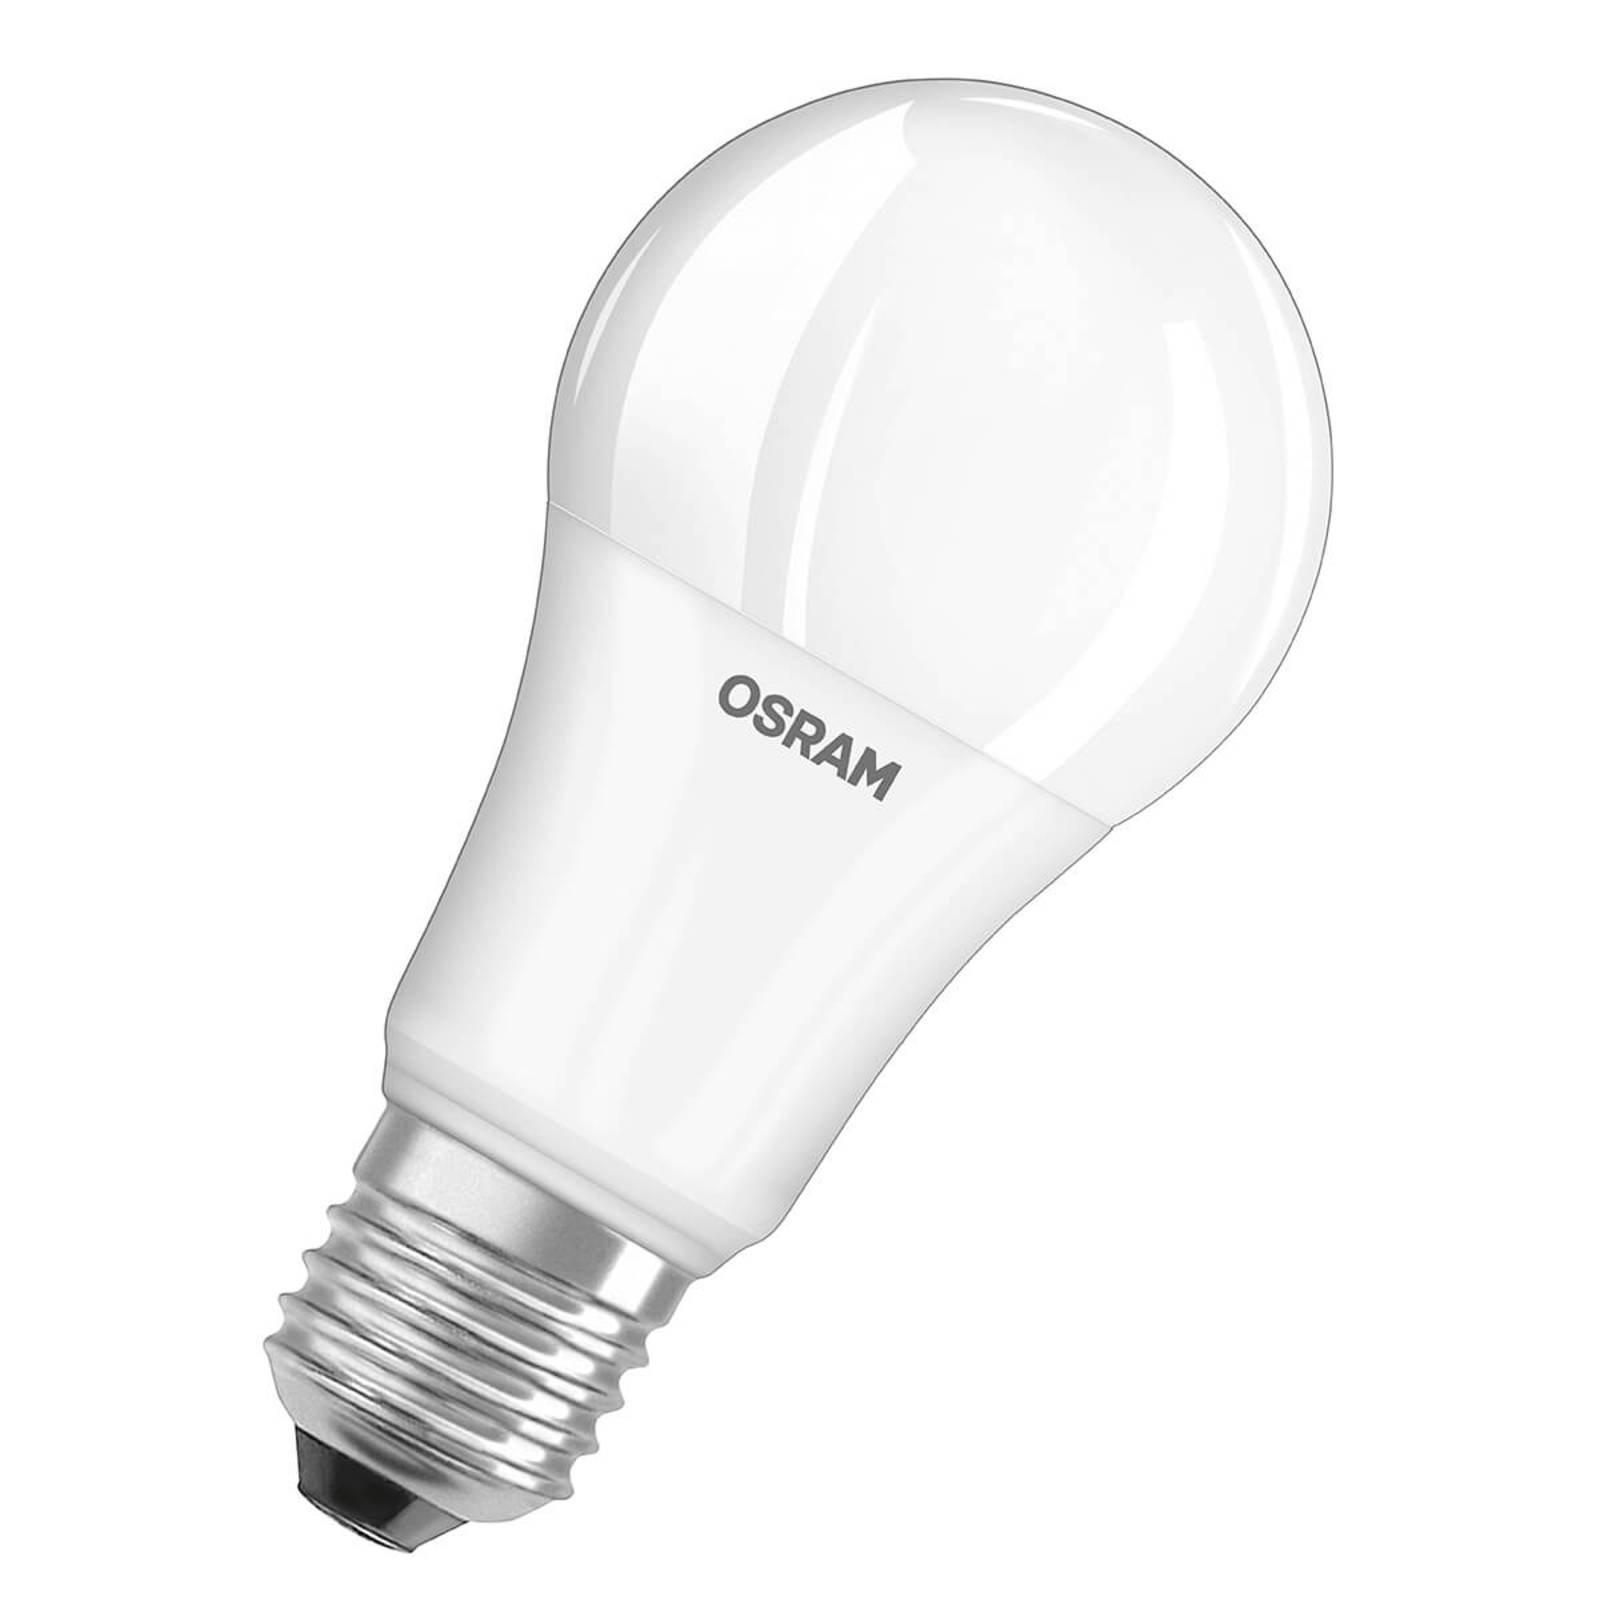 Ampoule LED E27 14W, blanc chaud, kit de 3